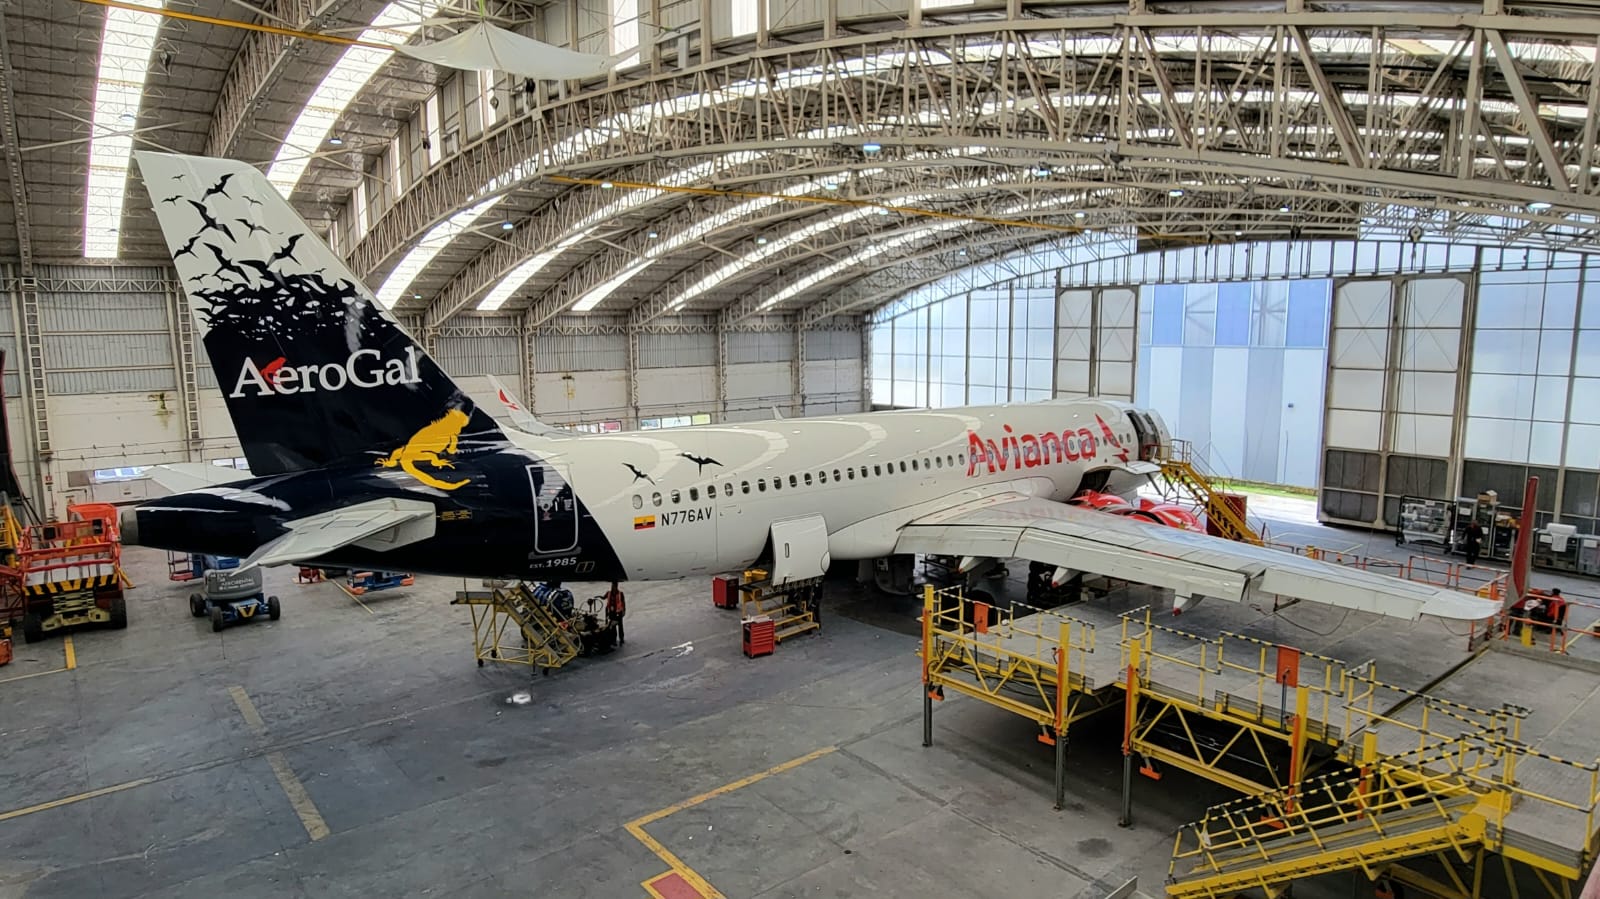 La nave seleccionada para lucir el logo de Aerogal es un Airbus A320, con matrícula N776AV que destaca en su cola la icónica iguana de color amarillo, sobre un fondo azul de fragatas volando. Foto: Cortesía